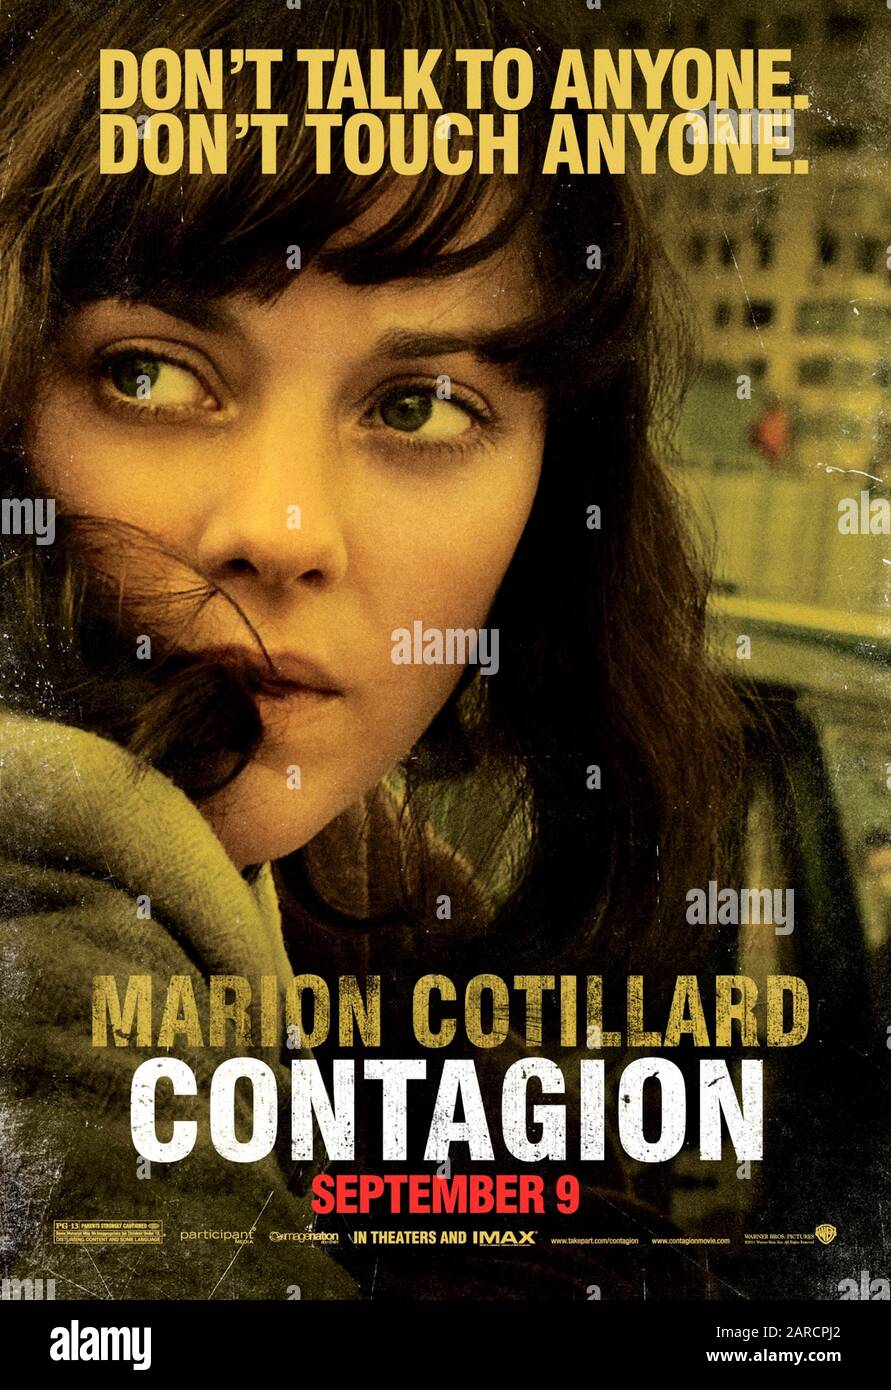 Contagio (2011) dirigido por Steven Soderbergh y protagonizado por Marion Cotillard como Dr. Leonora Orantes en esta representación exacta de la propagación de un virus mortal y la pandemia resultante. Foto de stock